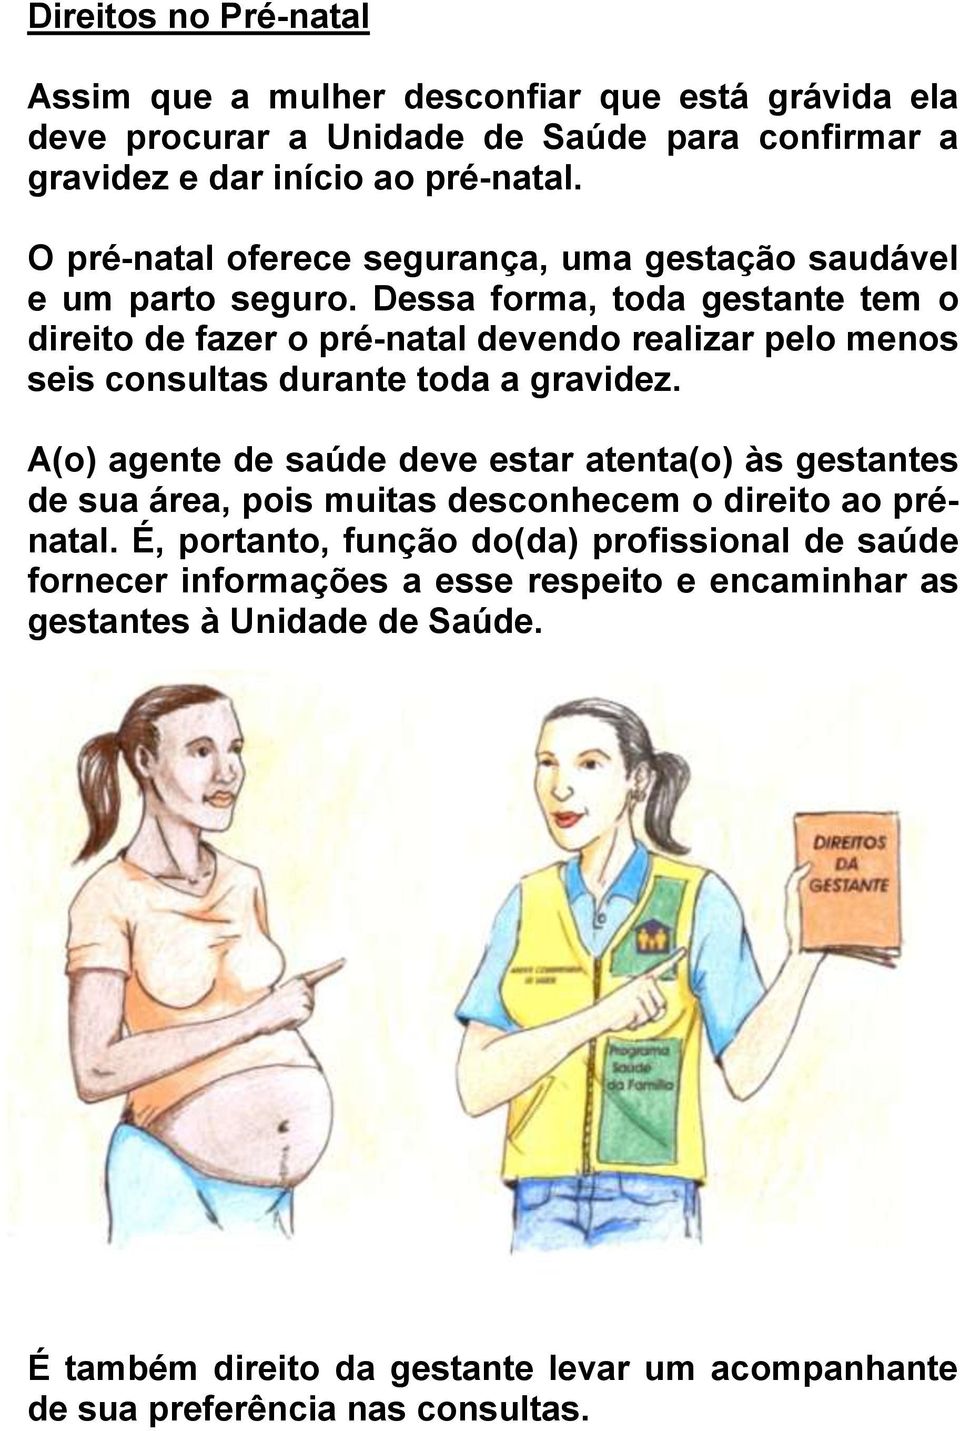 Dessa forma, toda gestante tem o direito de fazer o pré-natal devendo realizar pelo menos seis consultas durante toda a gravidez.